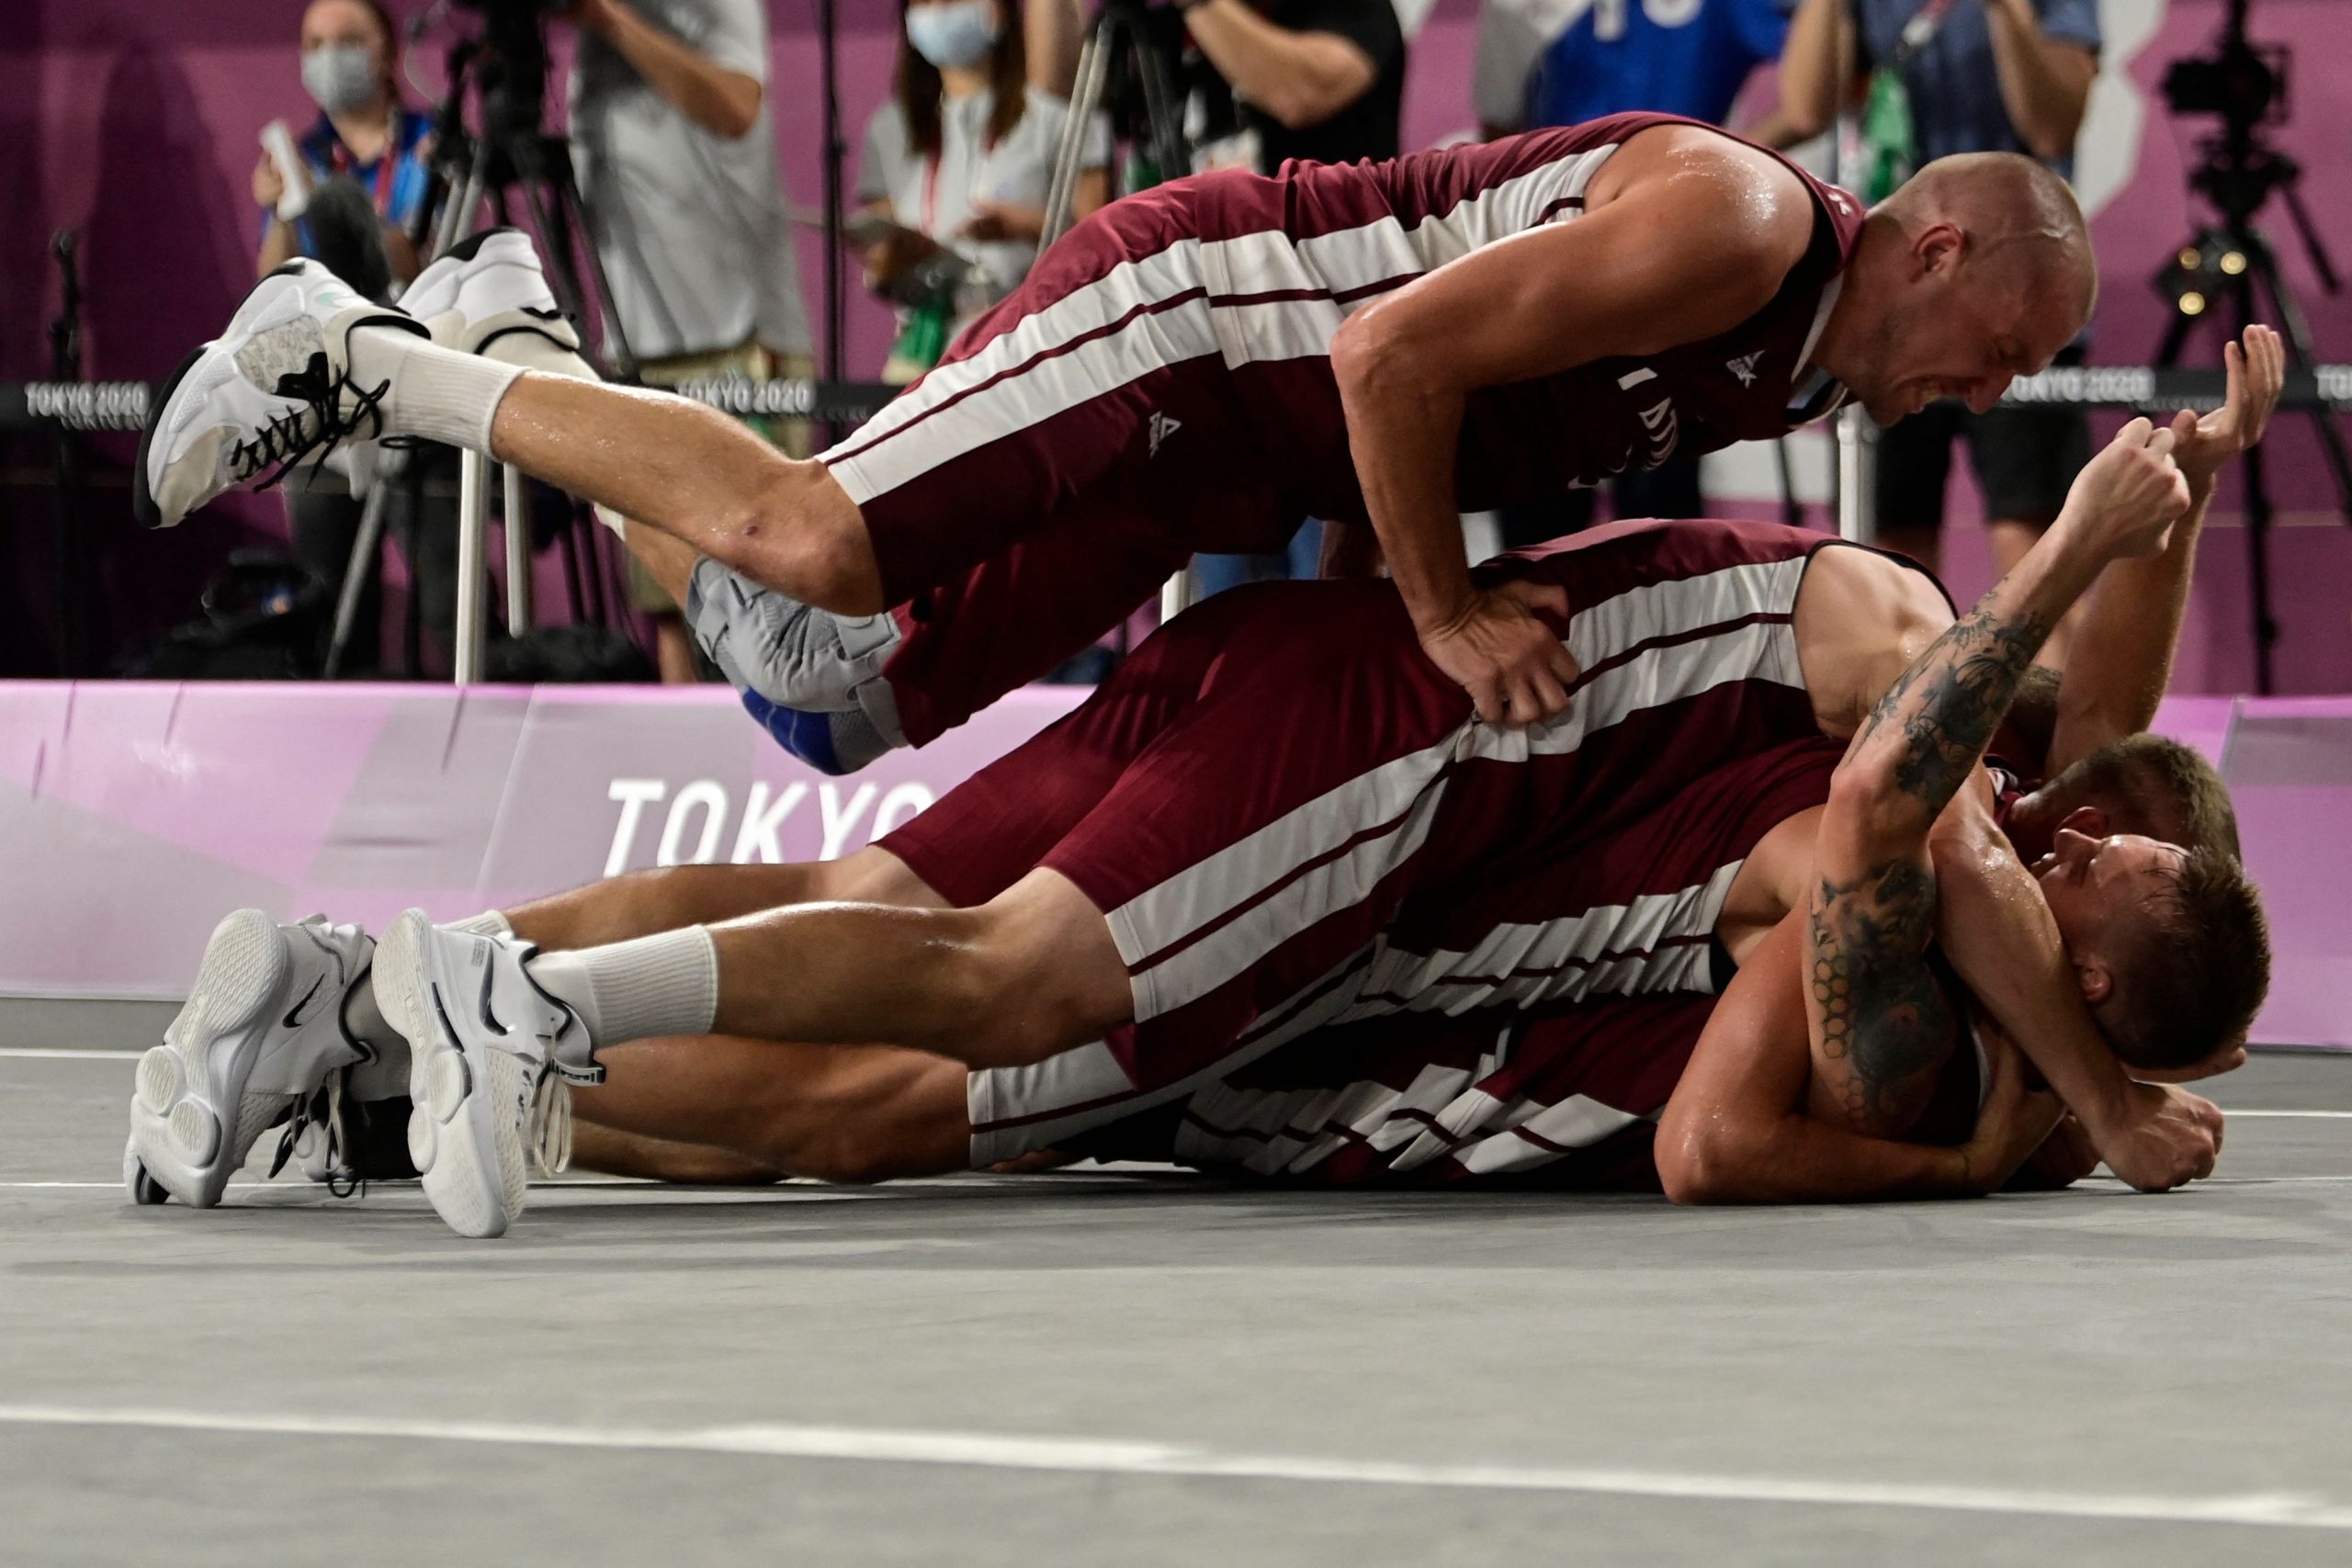 3×3 basketbolistiem OS zelts, Graudiņai un Kravčenokai pirmā uzvara – aizvadītās dienas aktualitātes